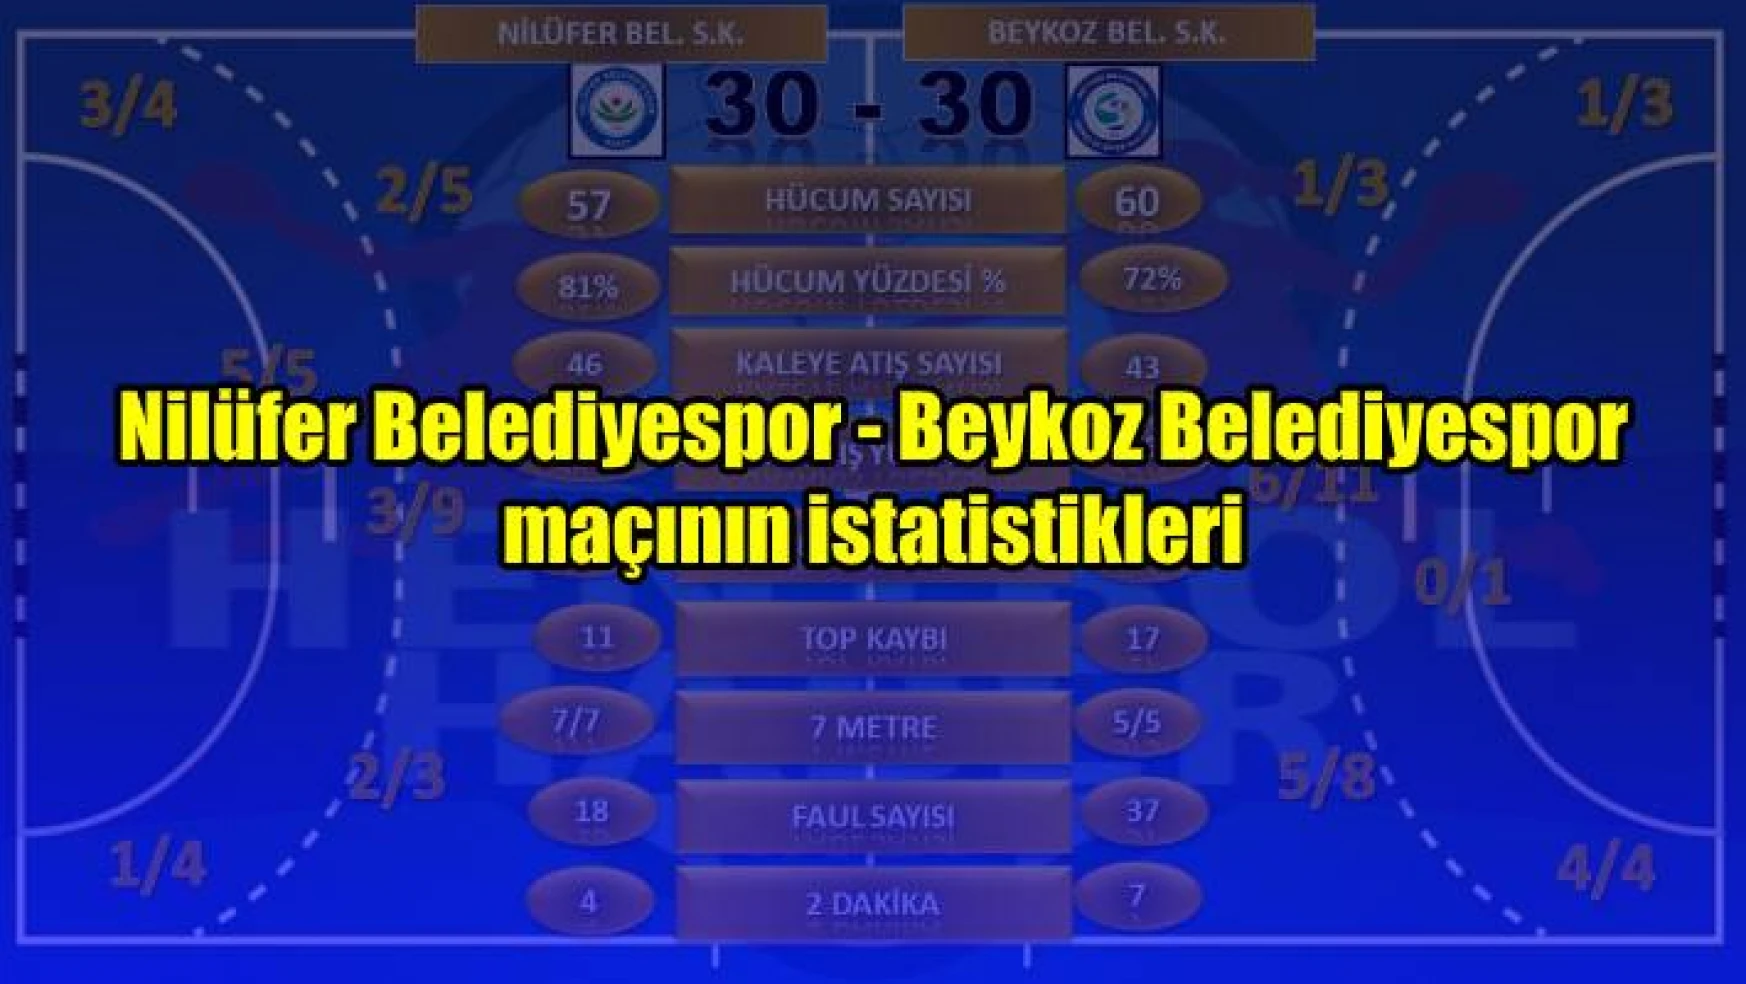 Nilüfer Belediyespor – Beykoz Belediyespor maçının istatistikleri